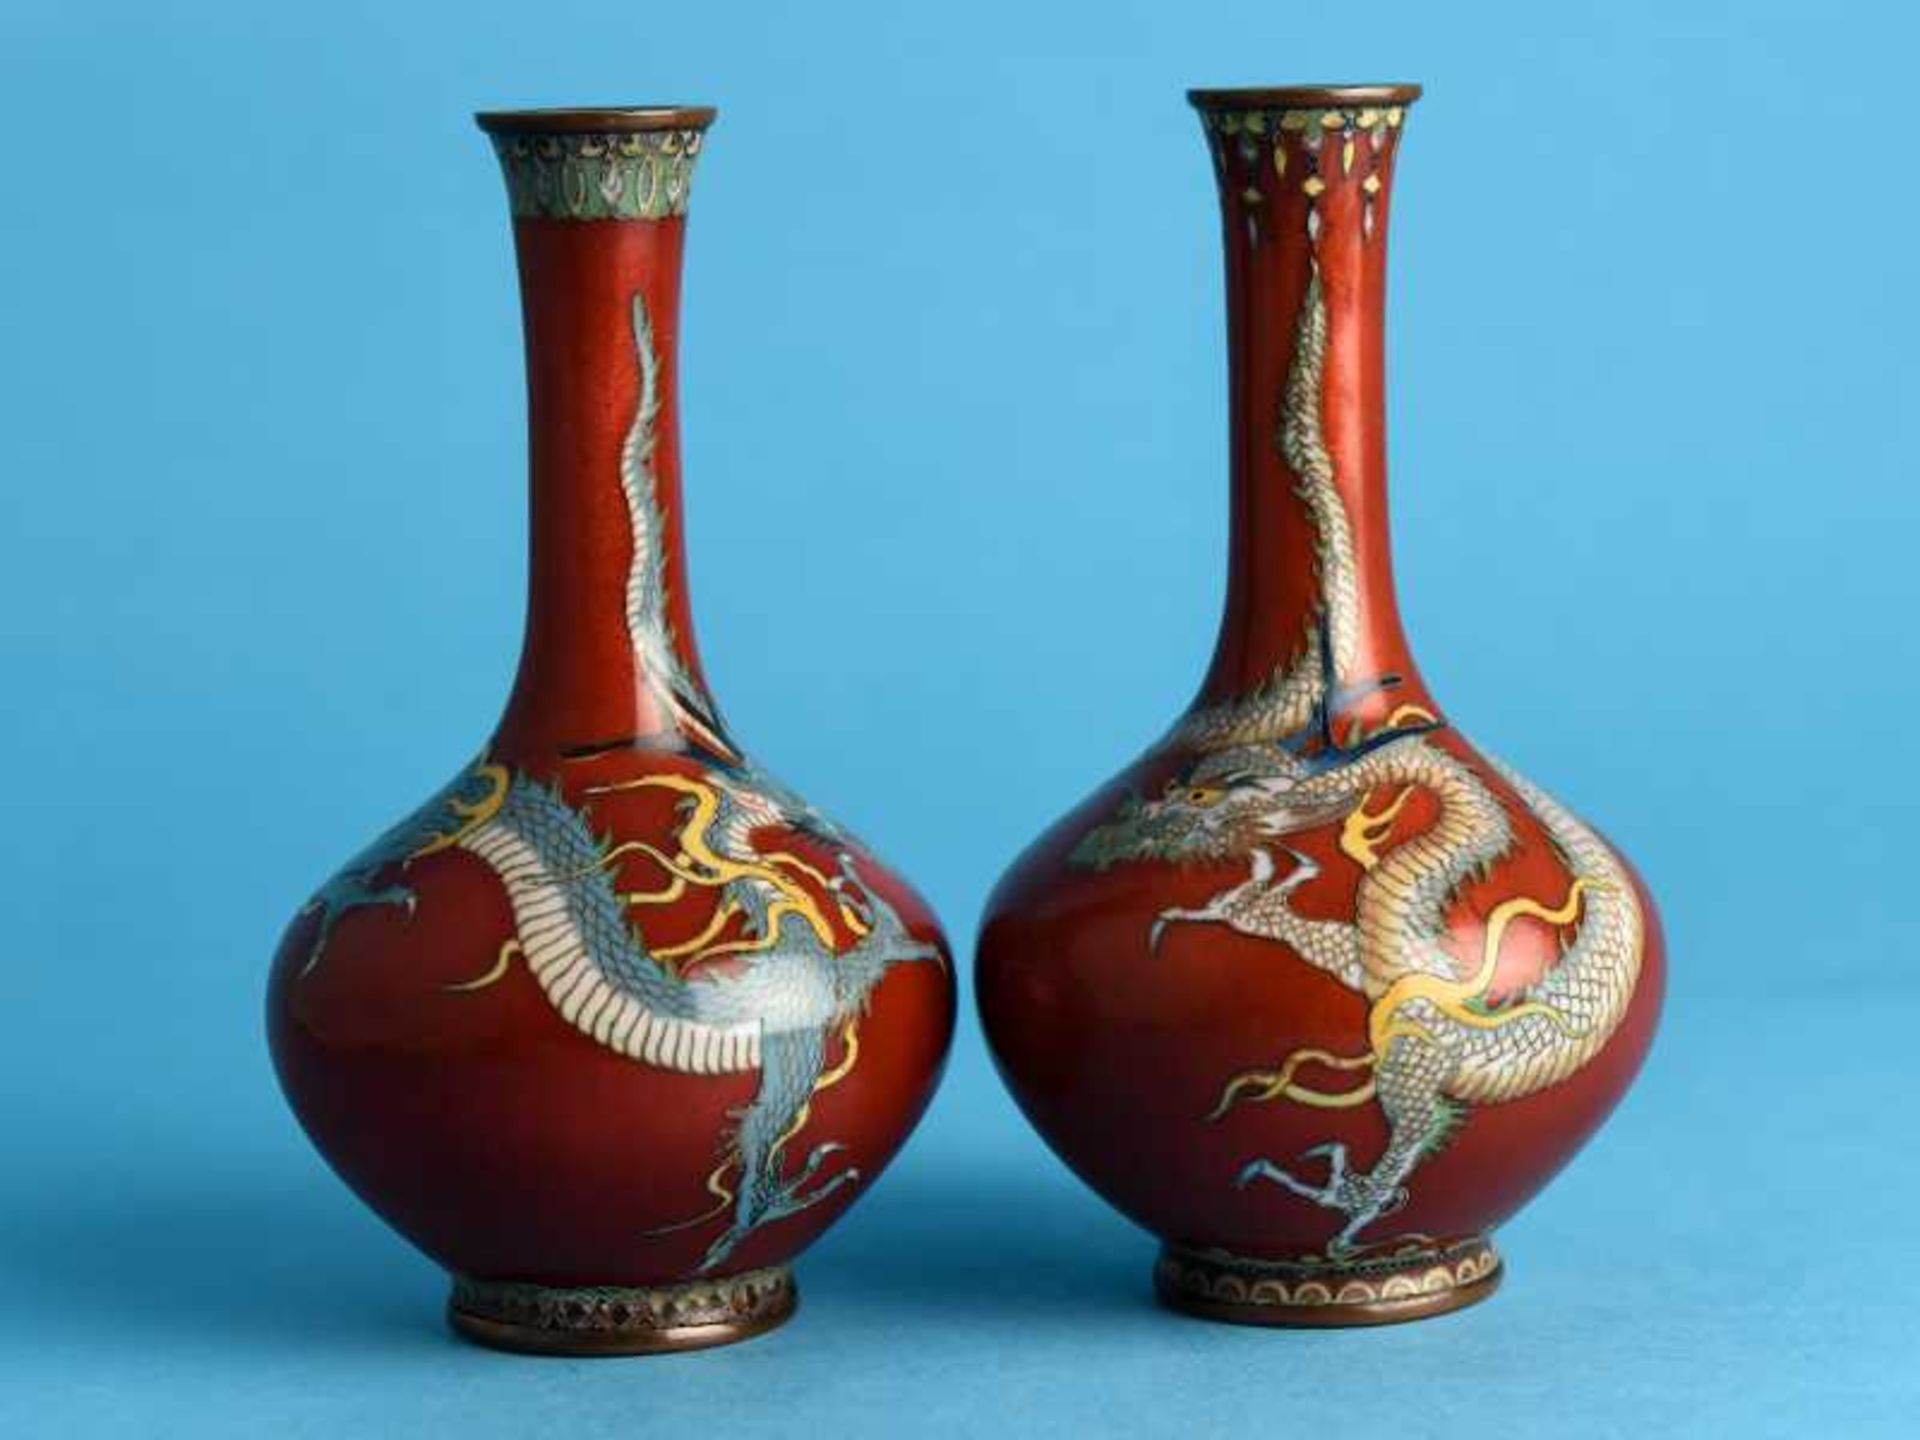 Paar kleine Cloisonné-Vasen, Japan, Meiji-Zeit Emaille-Cloisonné auf Messing/Kupfer. Gebauchter